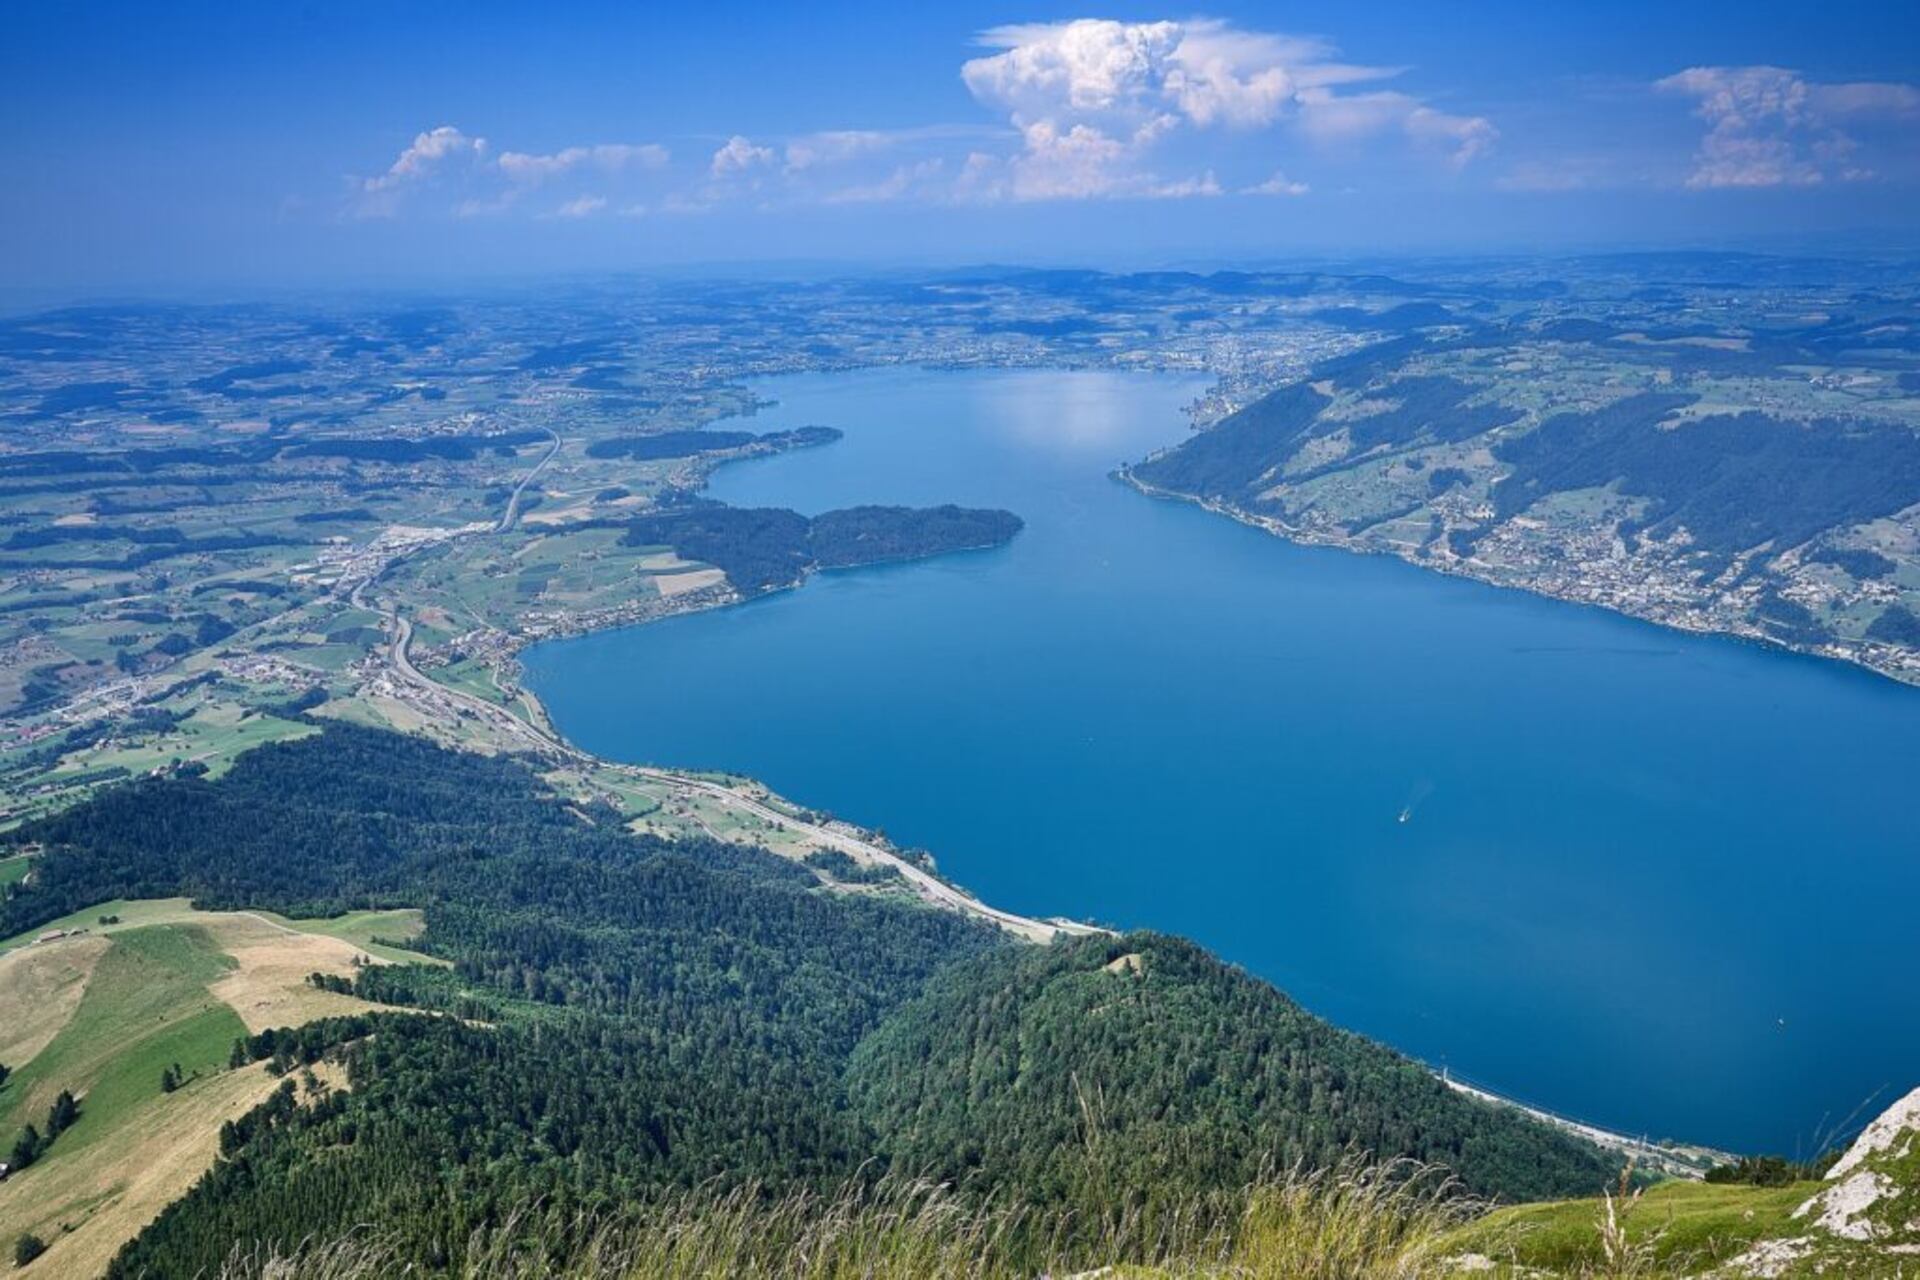 Blockchain Zug: Lake Zug: ตำบลที่มีชื่อเดียวกันใน Central Switzerland เป็นหนึ่งในเมืองหลวงทางการเงินดิจิทัลของโลก